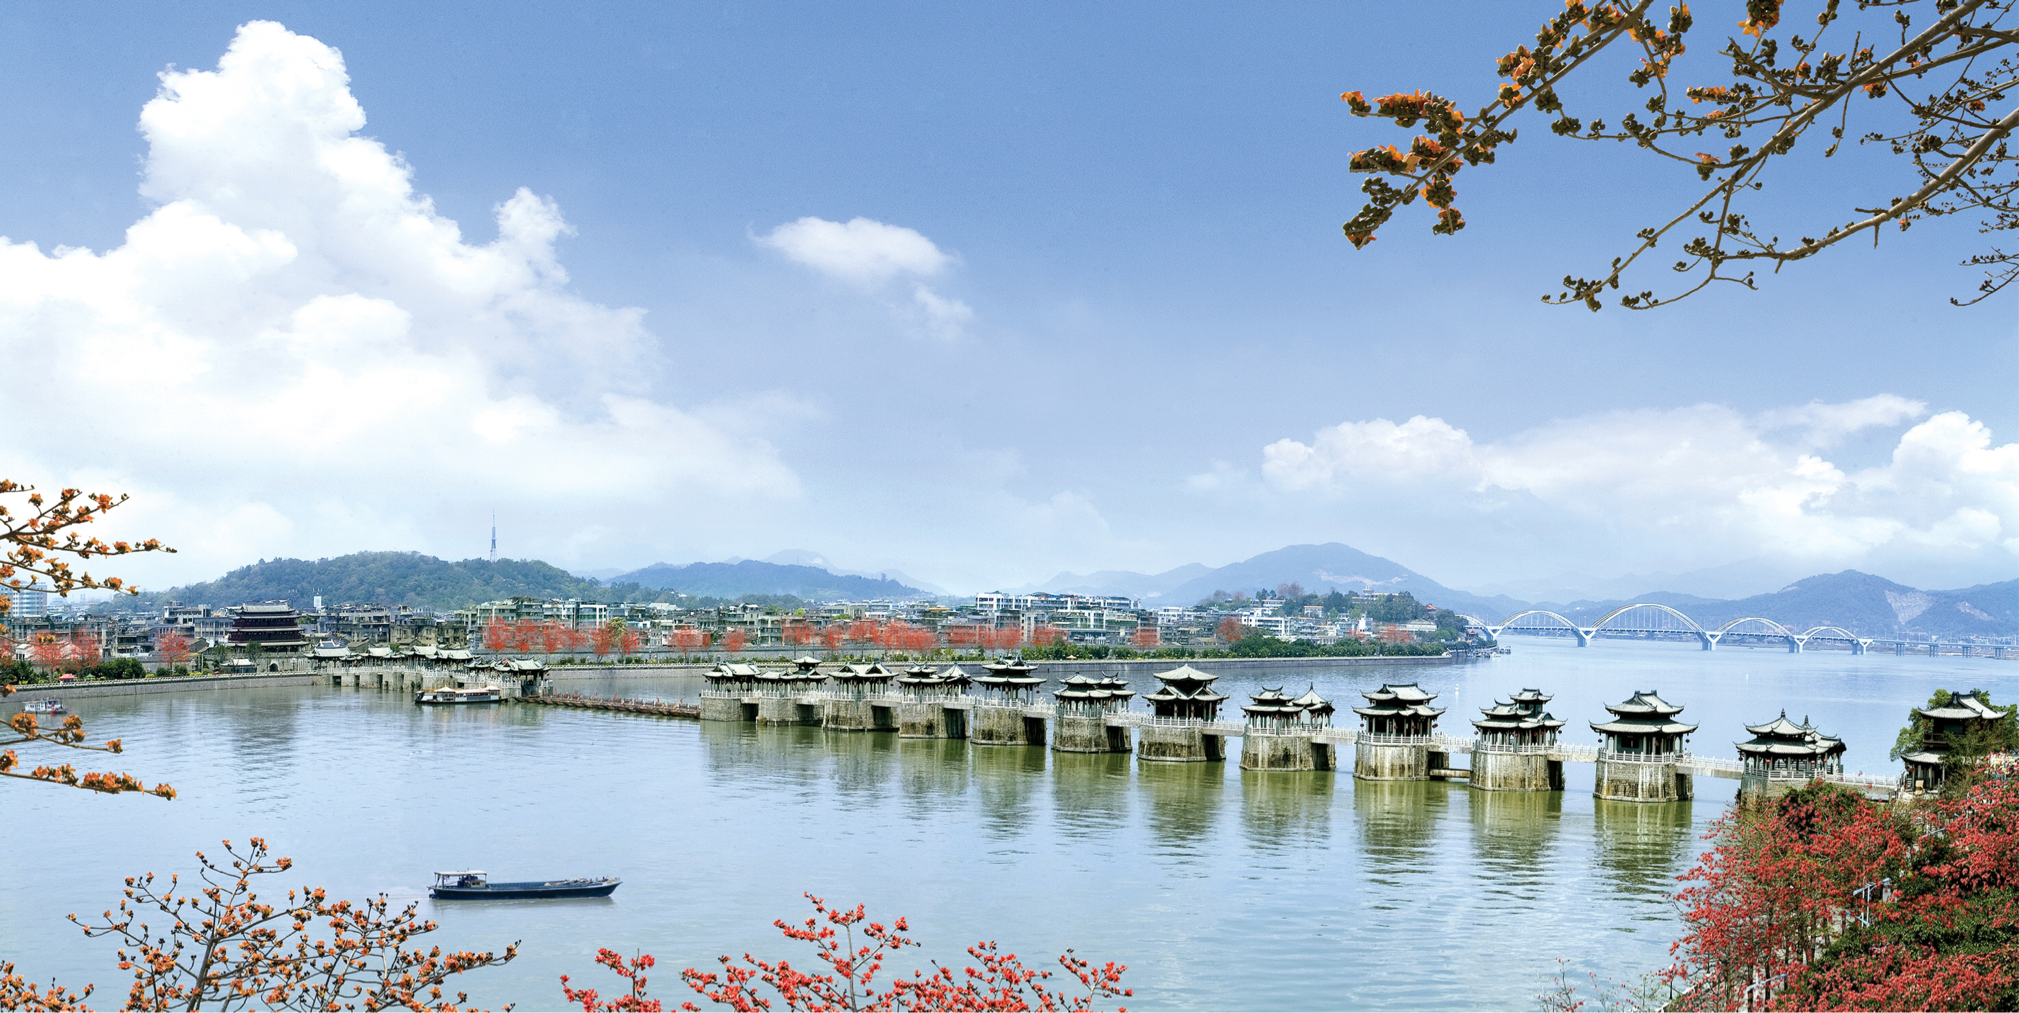 广济桥 张伟雄摄伴随着旅游业的发展,骤增的人流量和车流量,给潮州